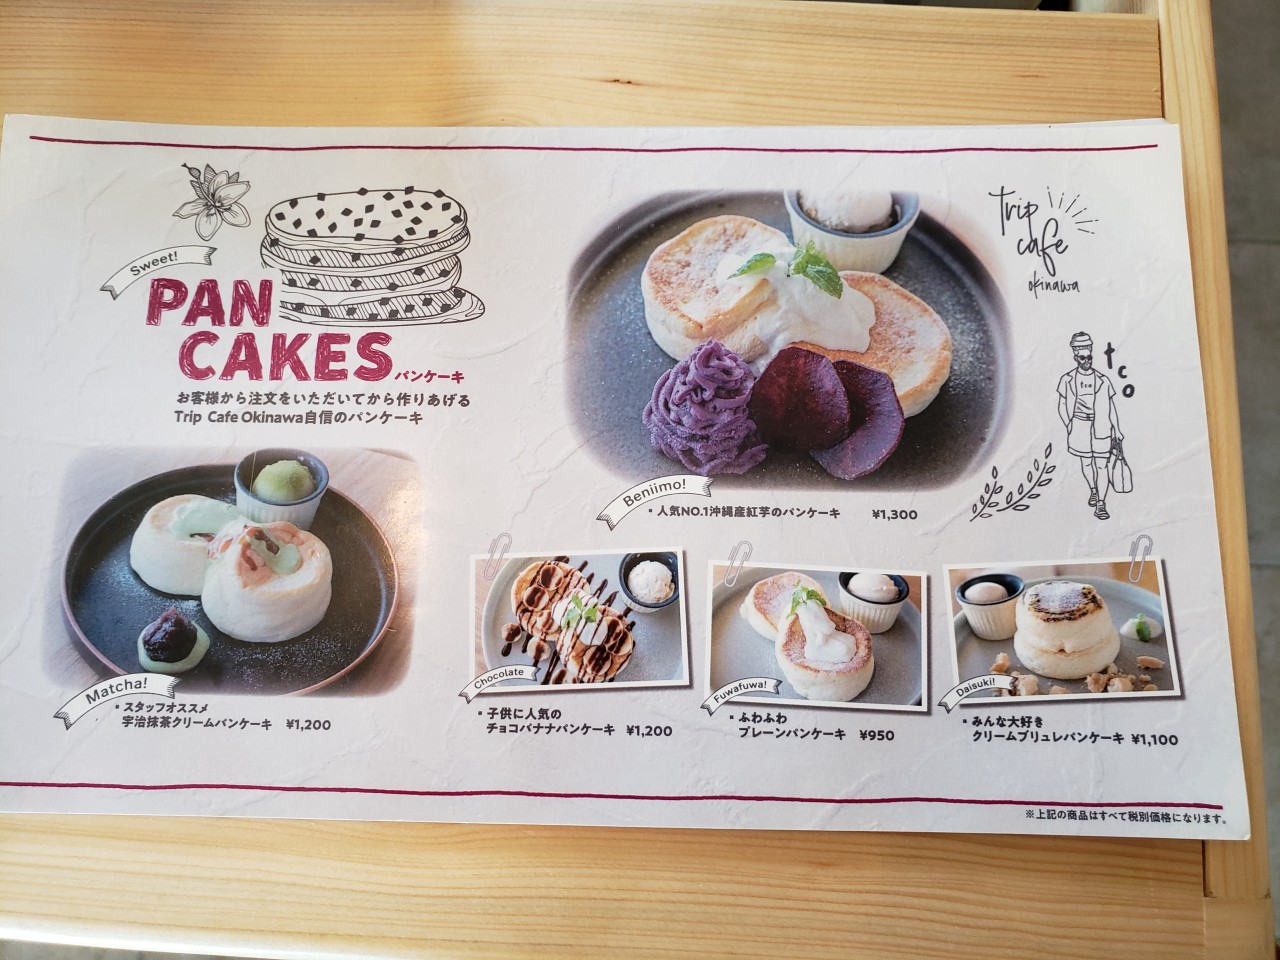 パンケーキの美味しい可愛い店 Trip Cafe Okinawa 恩納村 がオススメ 沖縄口コミ グルメ